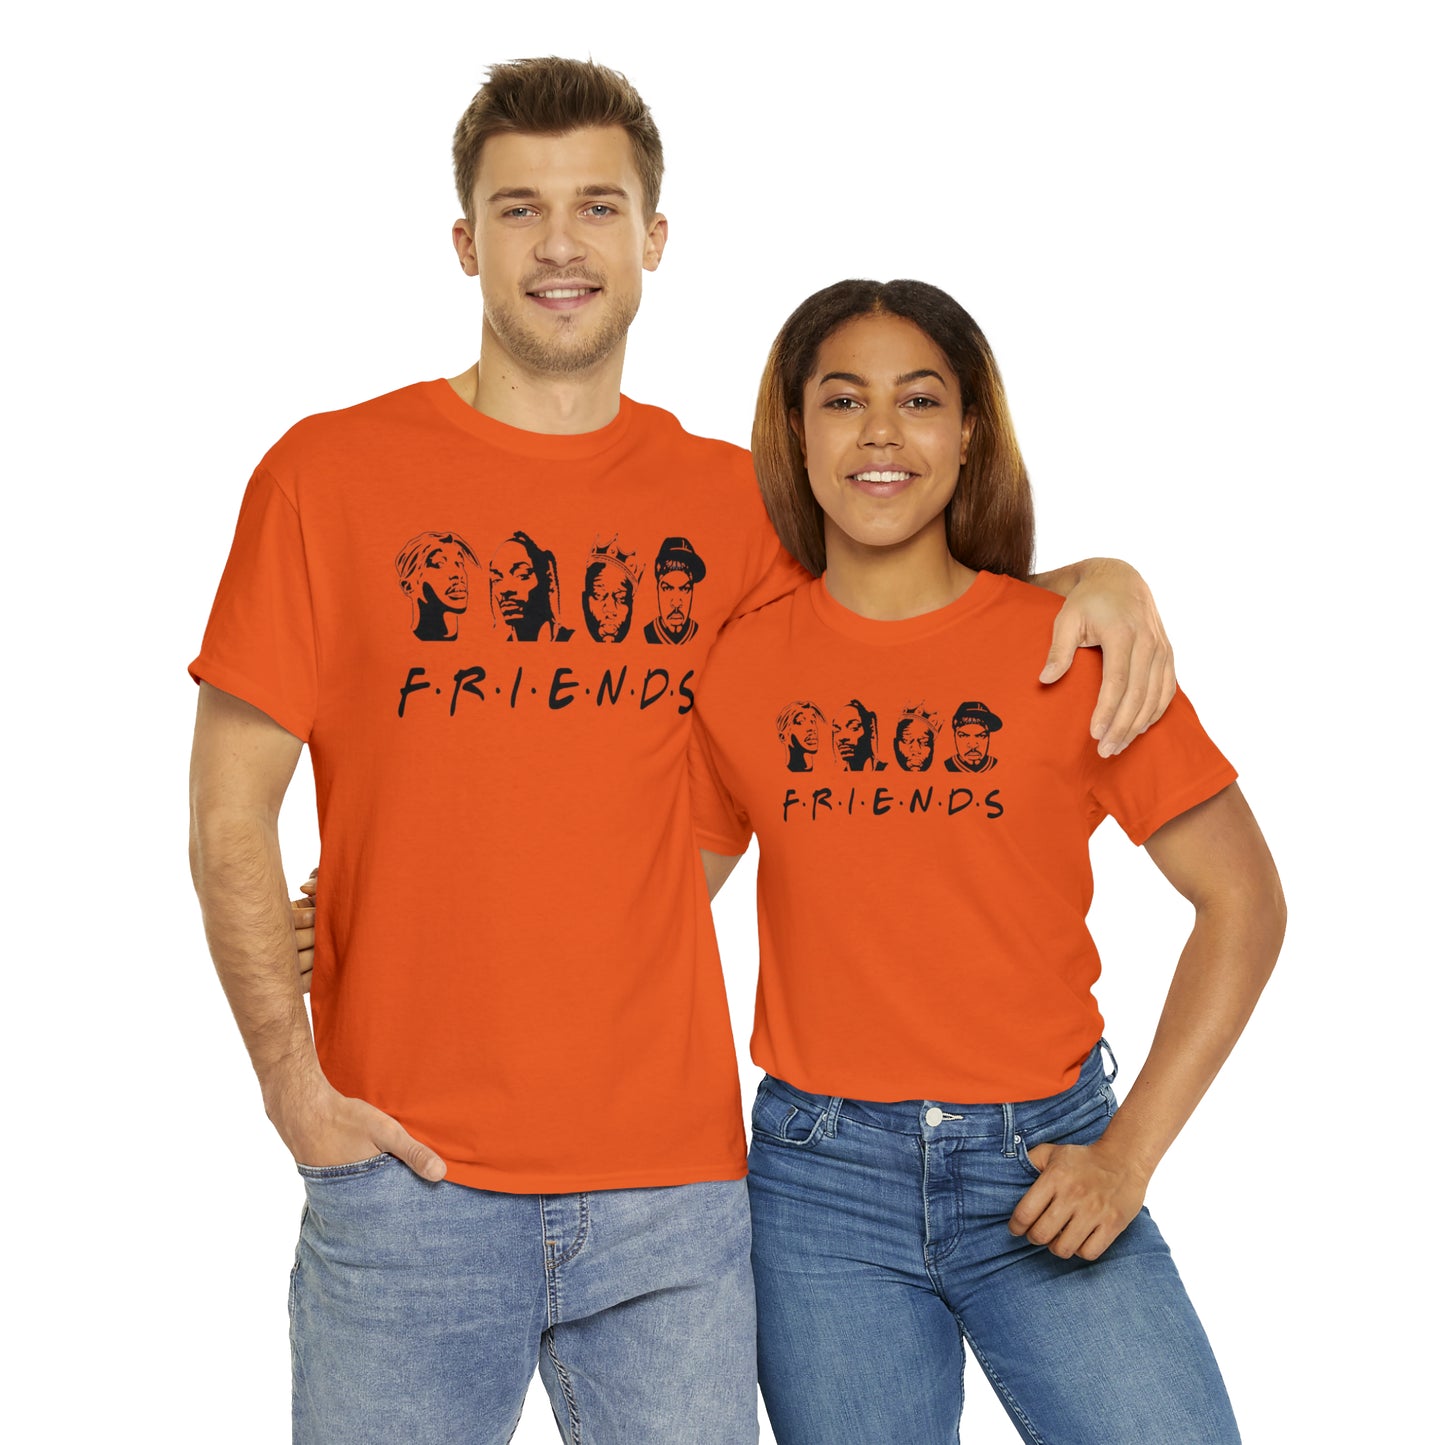 HipHop Friends T-shirt